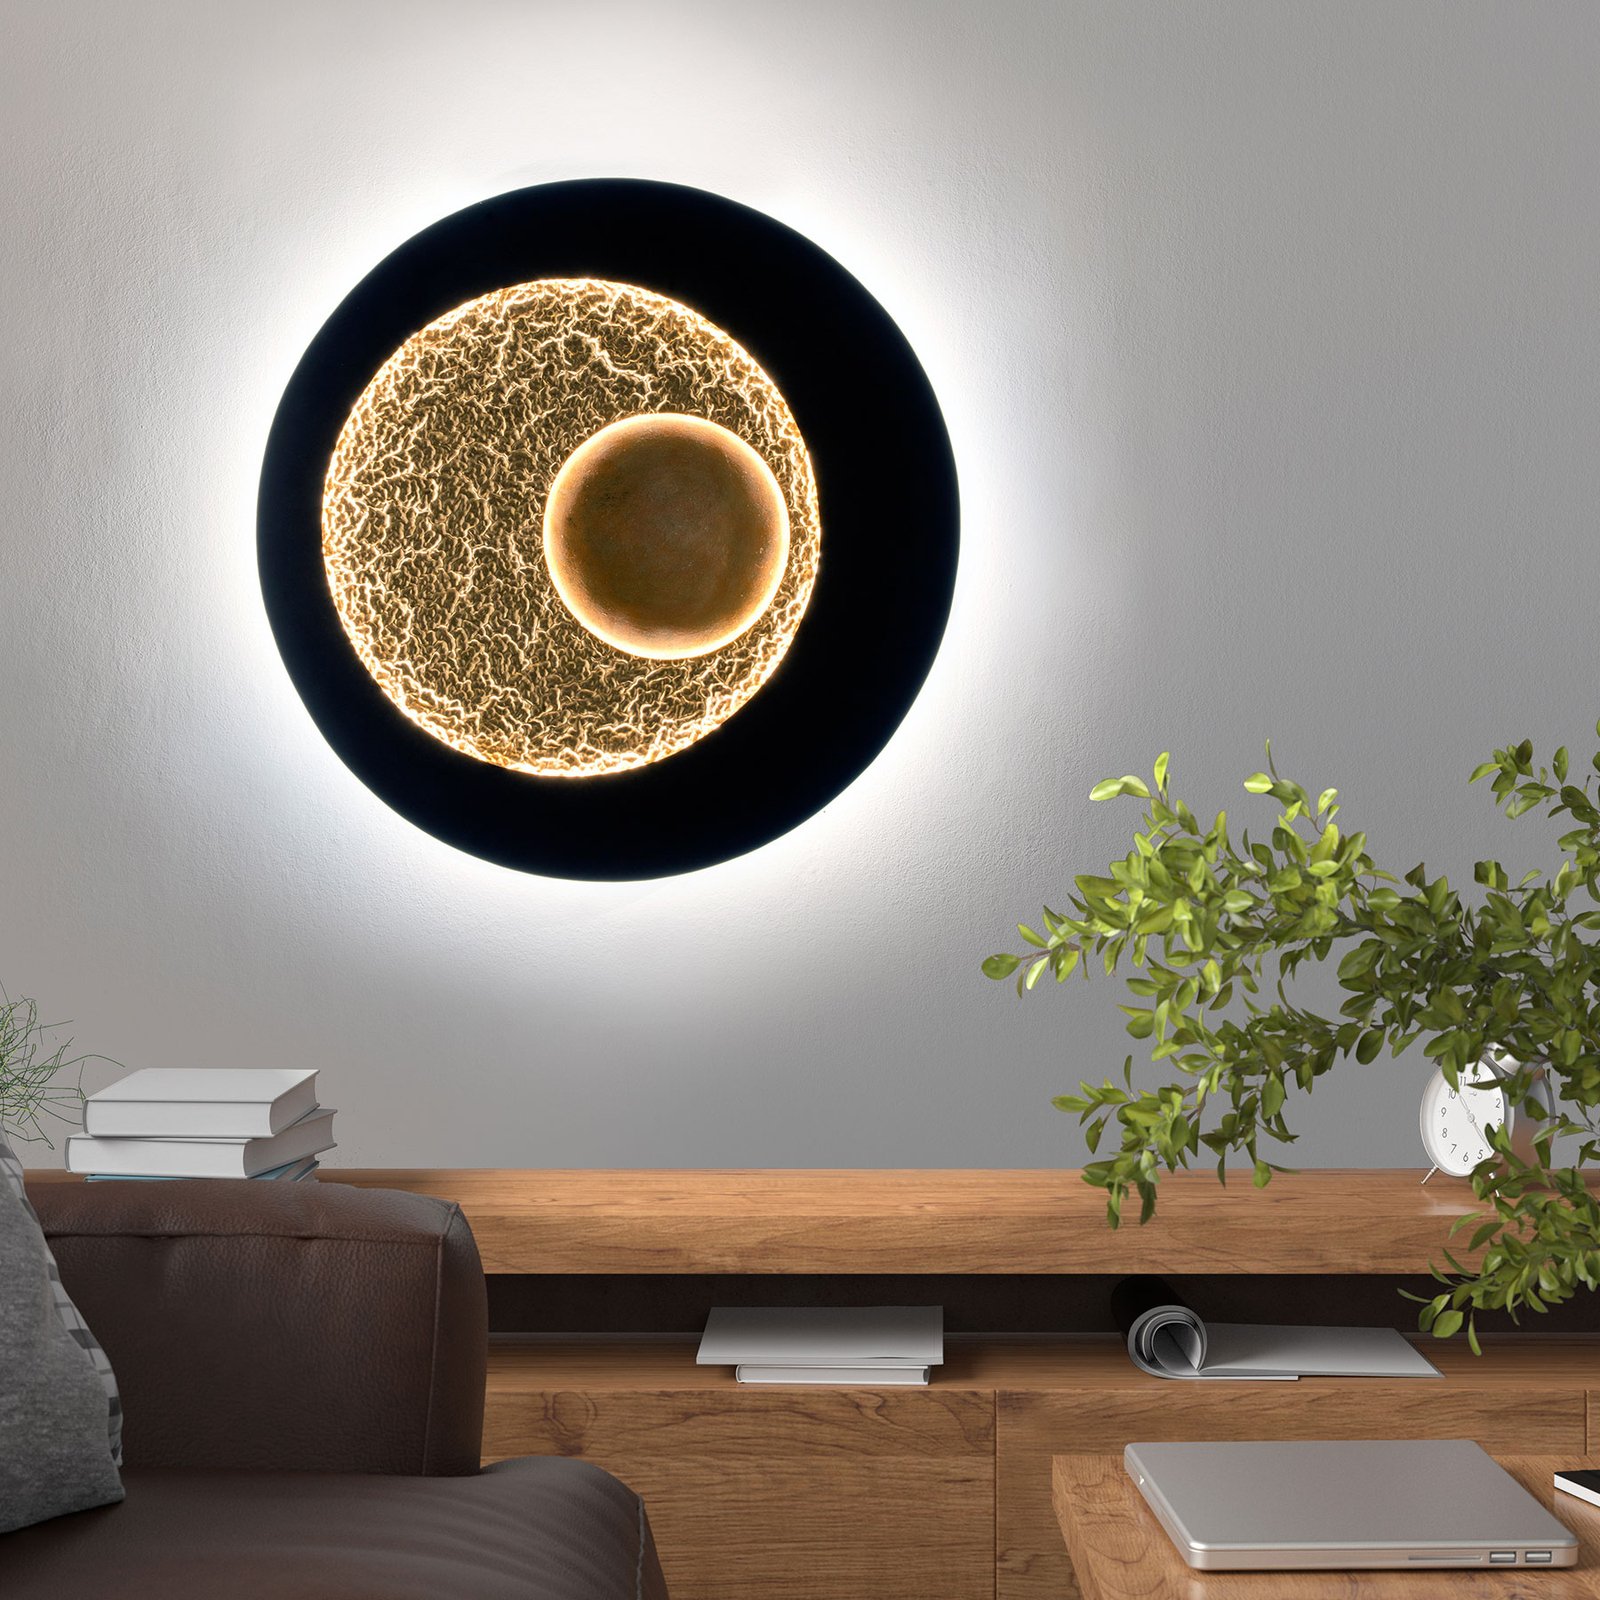 LED wall light Urano, elegant design